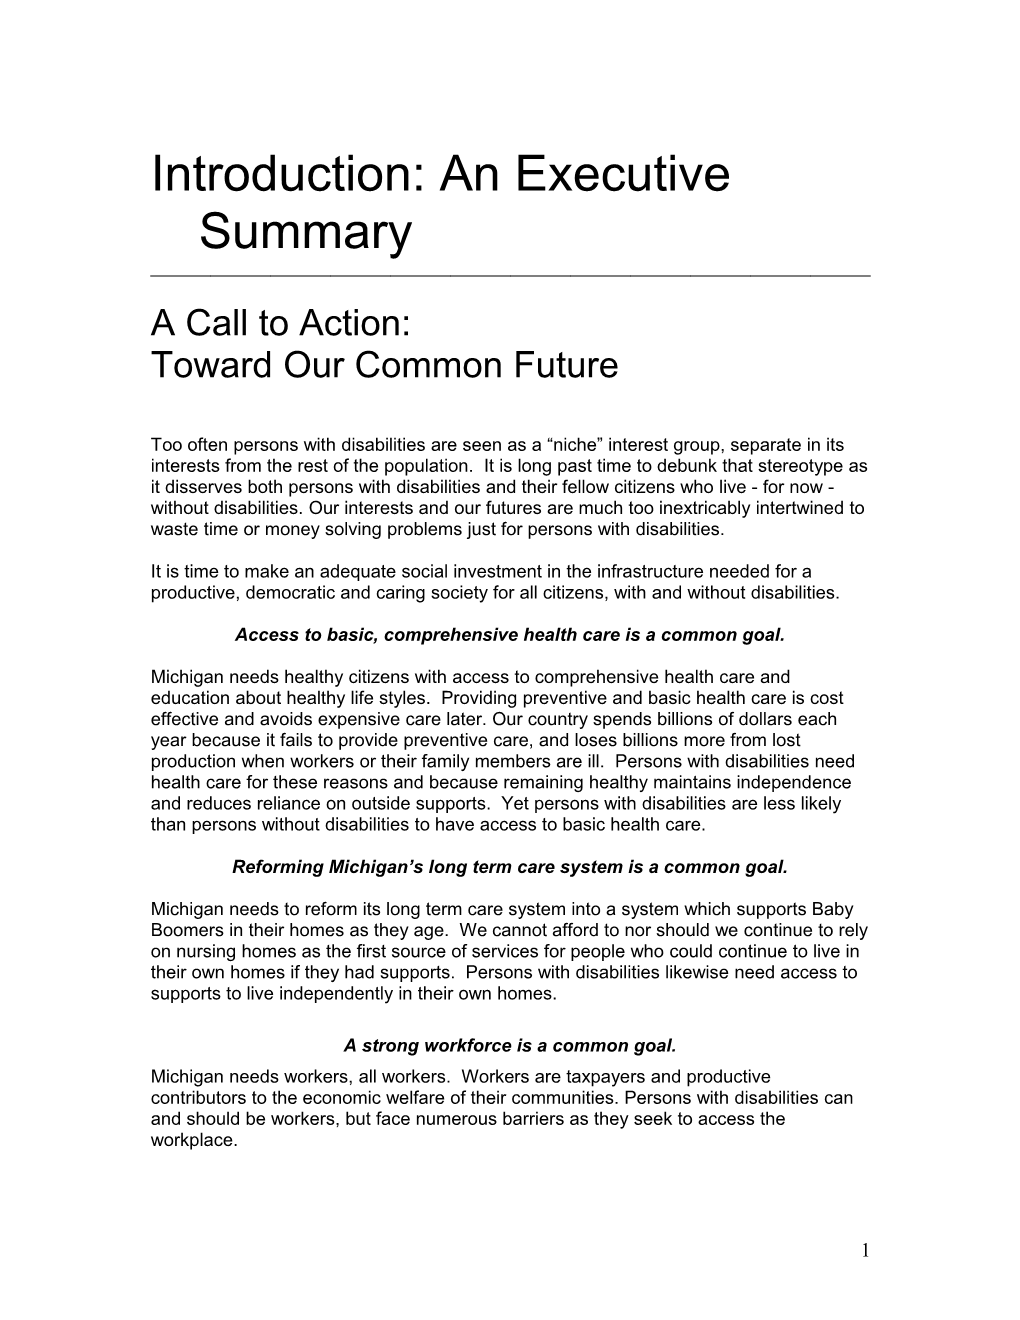 Introduction: an Executive Summary